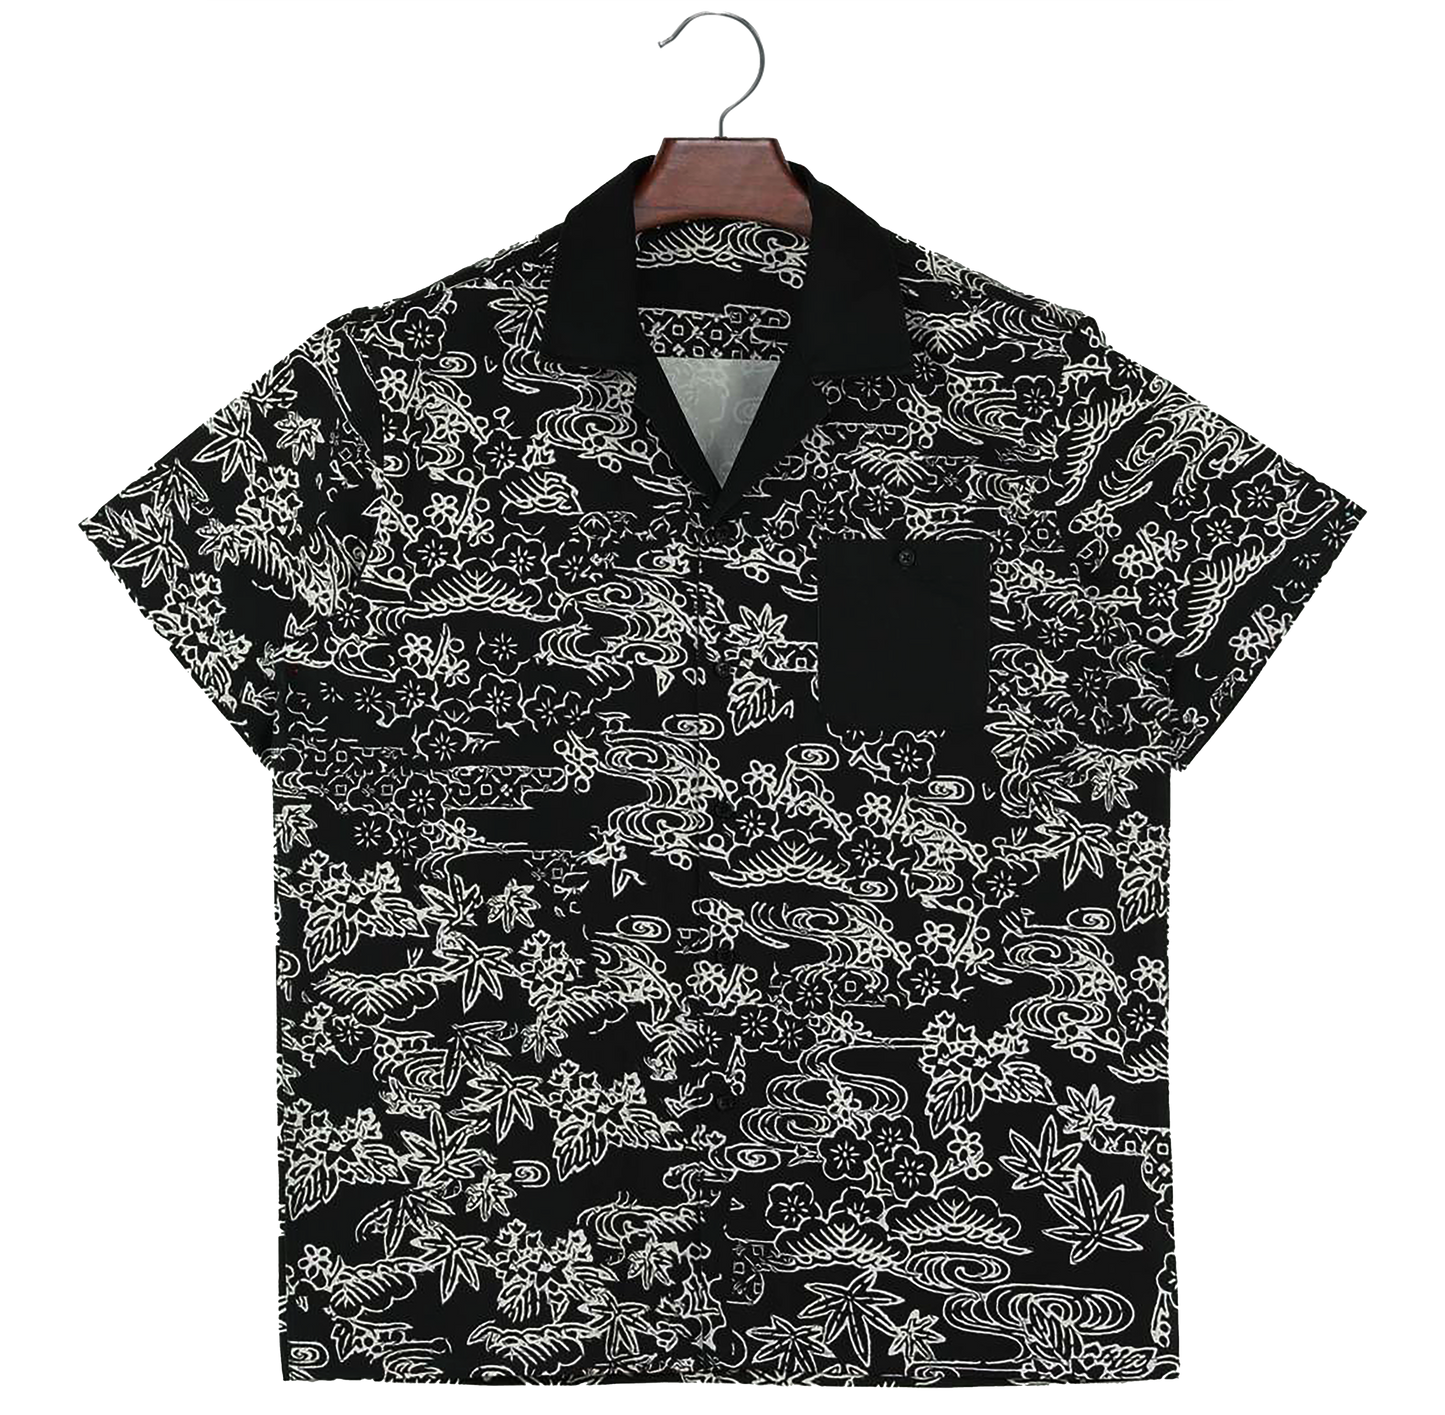 Okinawa Pattern Shirt